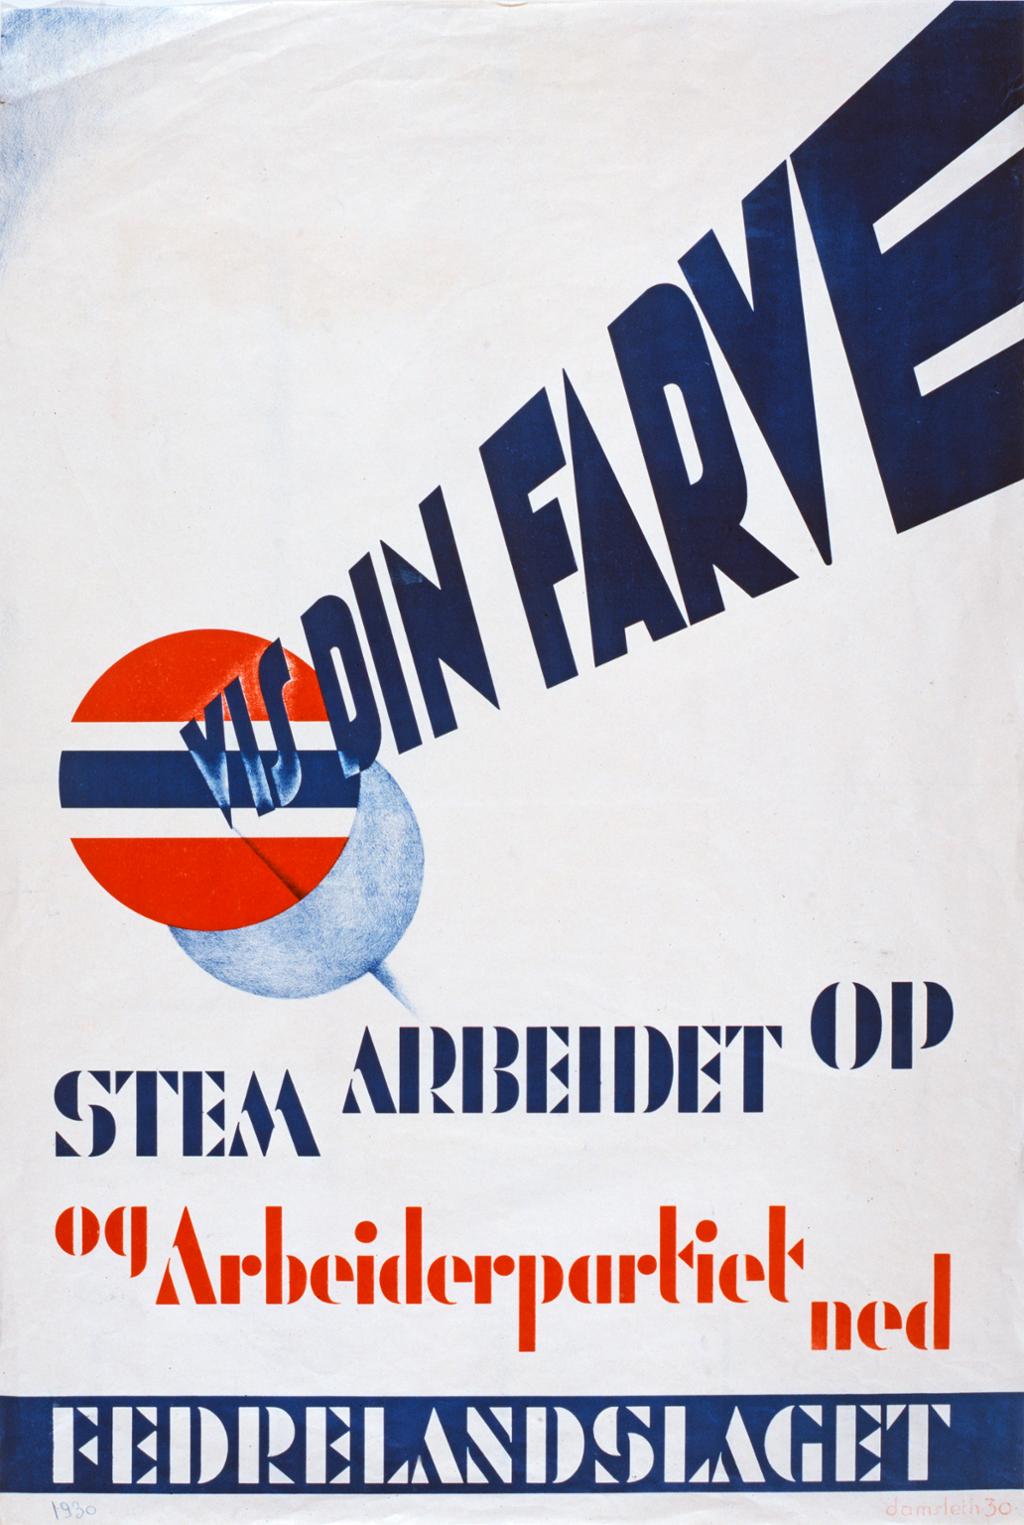 Propagandaplakat fra den politiske organisasjonen Fedrelandslaget, med teksten: "Vis din farve. Stem Arbeidet opp og Arbeiderpartiet ned." 